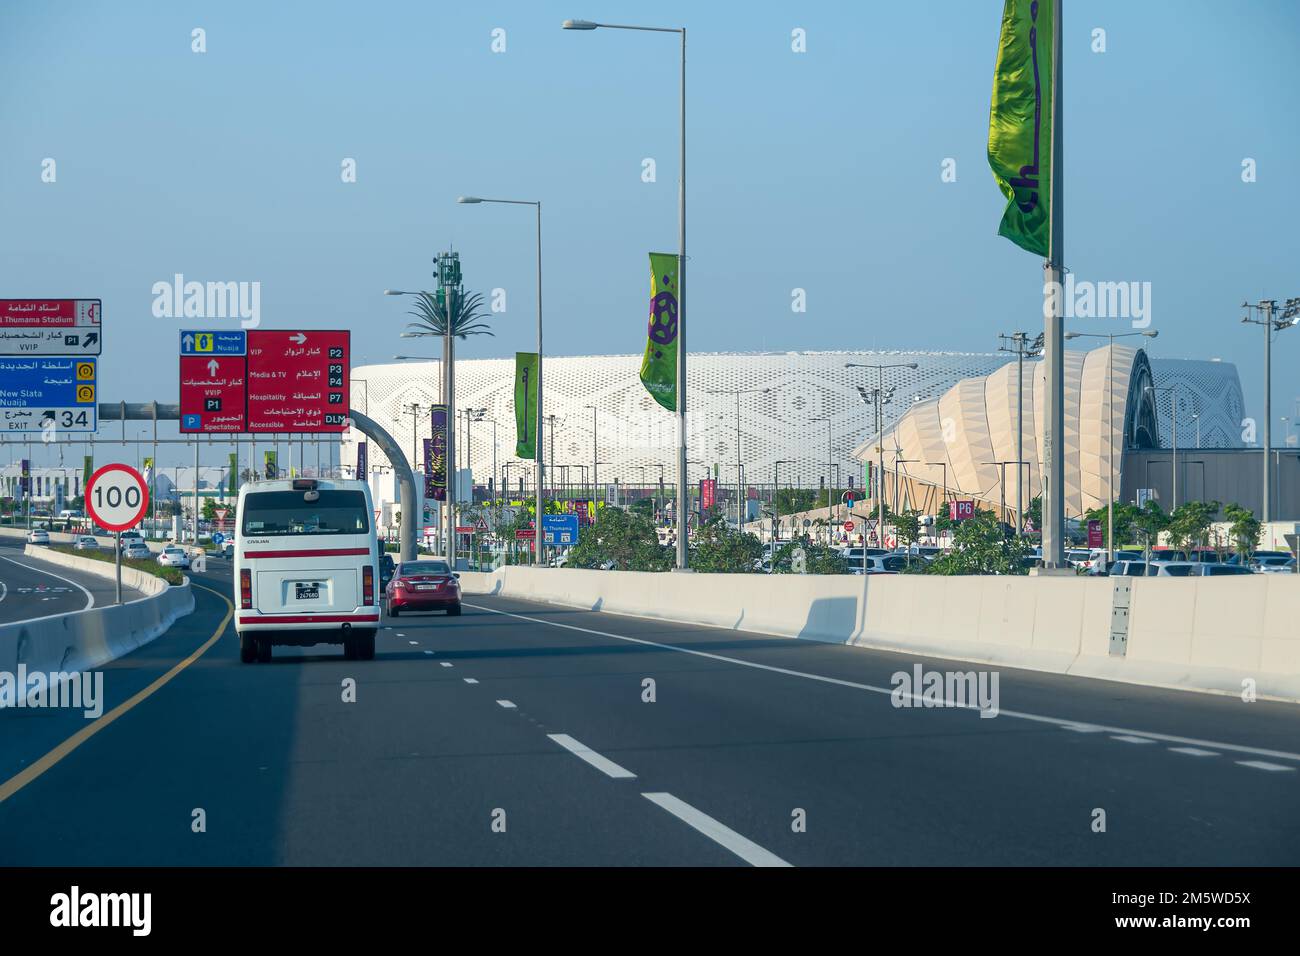 Una vista generale dello stadio al Thumama, uno dei luoghi in cui si svolge il torneo di calcio della Coppa del mondo FIFA Qatar 2022. Foto Stock